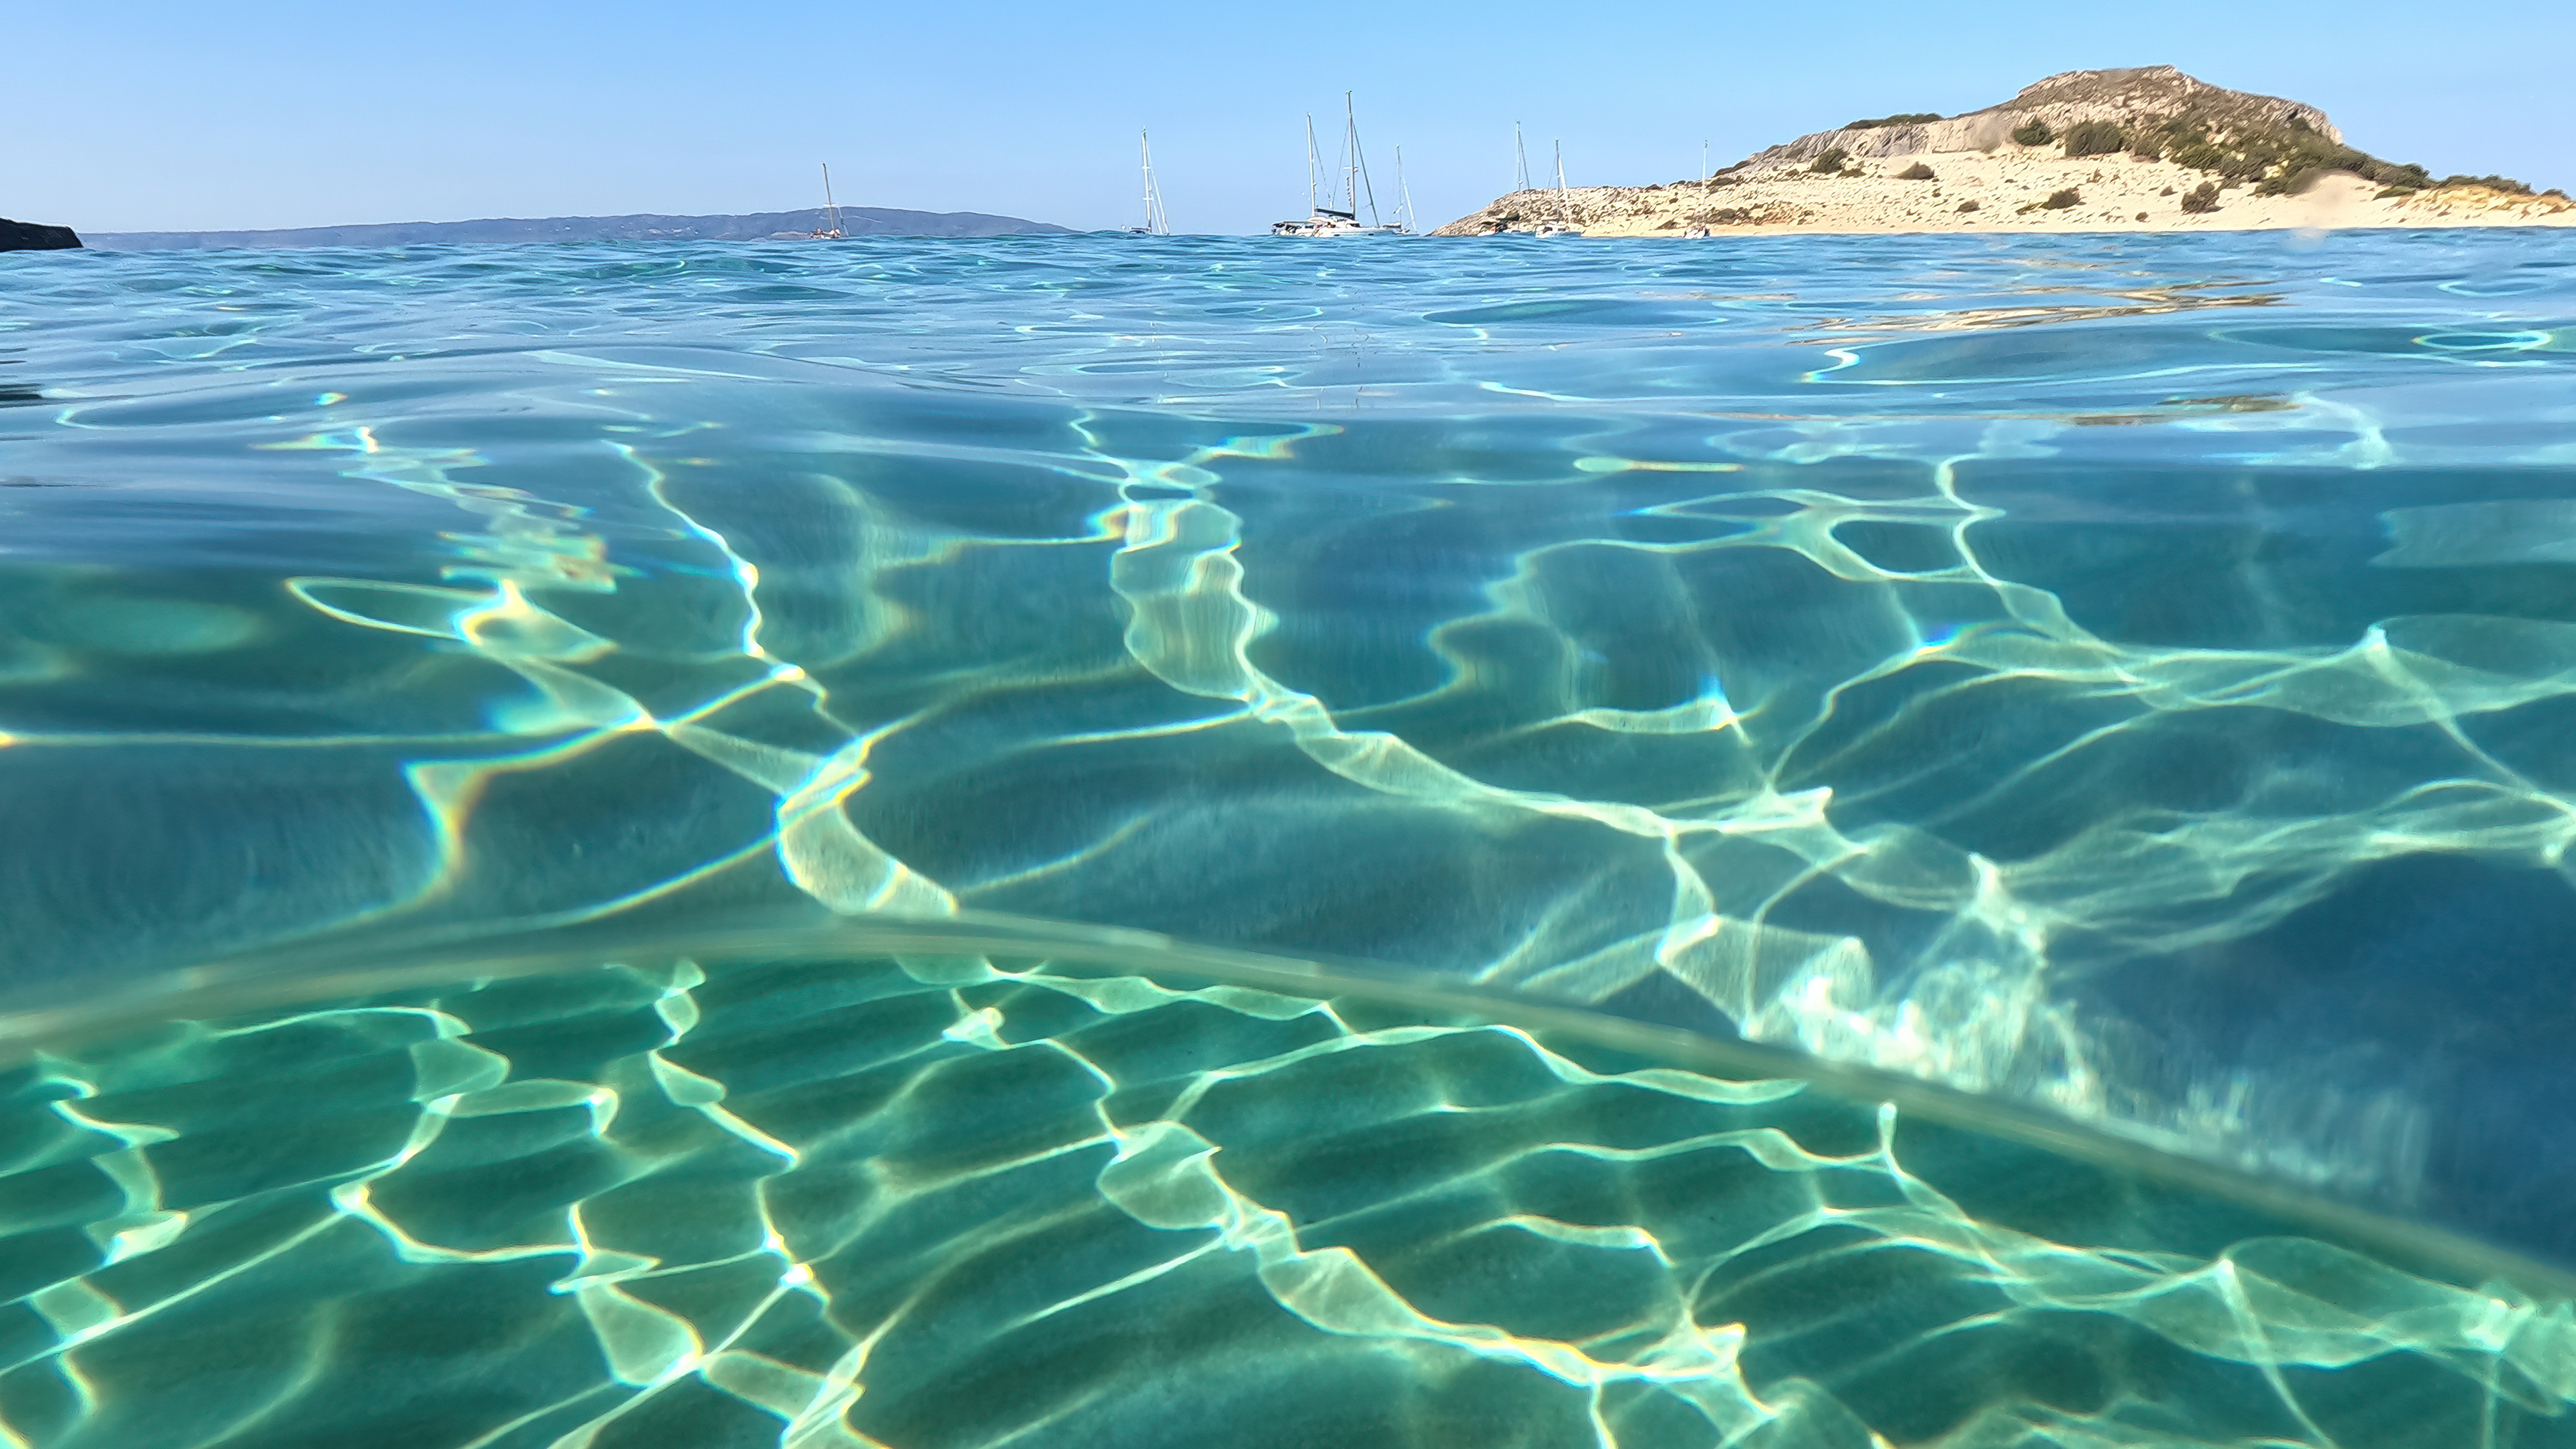 L'eau de la Méditerranée dépasse les 30 °C entre l'Égypte, Israël, le Liban et la Turquie. © aerial-drone, Adobe Stock